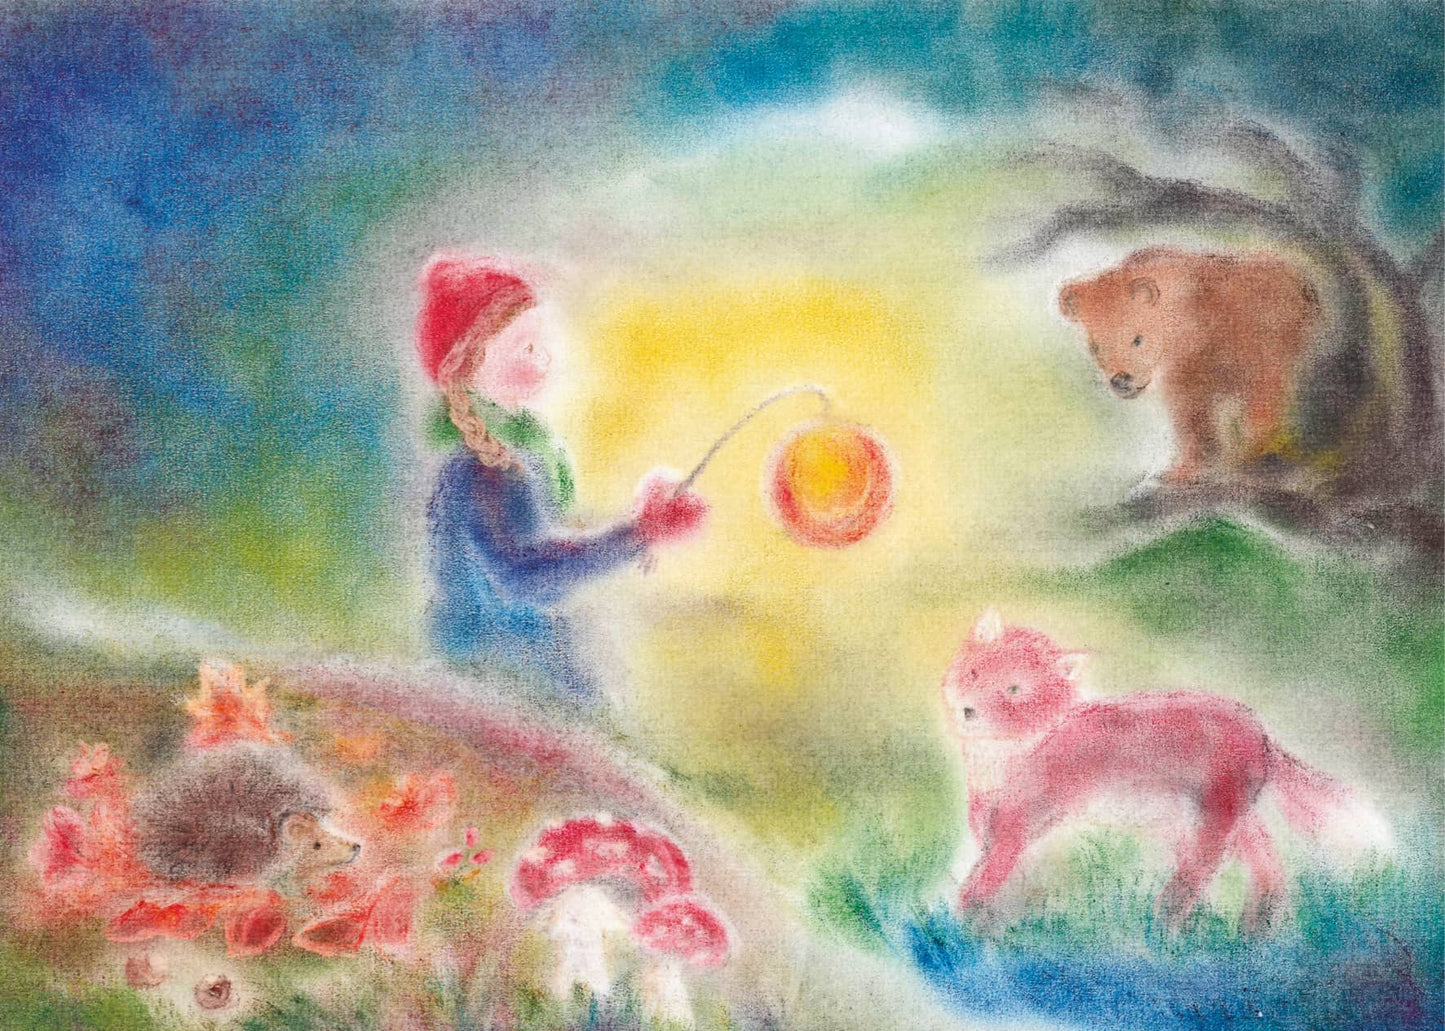 Märchenhafte Seccorell Postkarte "Laternenkind mit Tieren" zeigt ein Kind mit Laterne in leuchtenden Farben umgeben von Waldtieren.